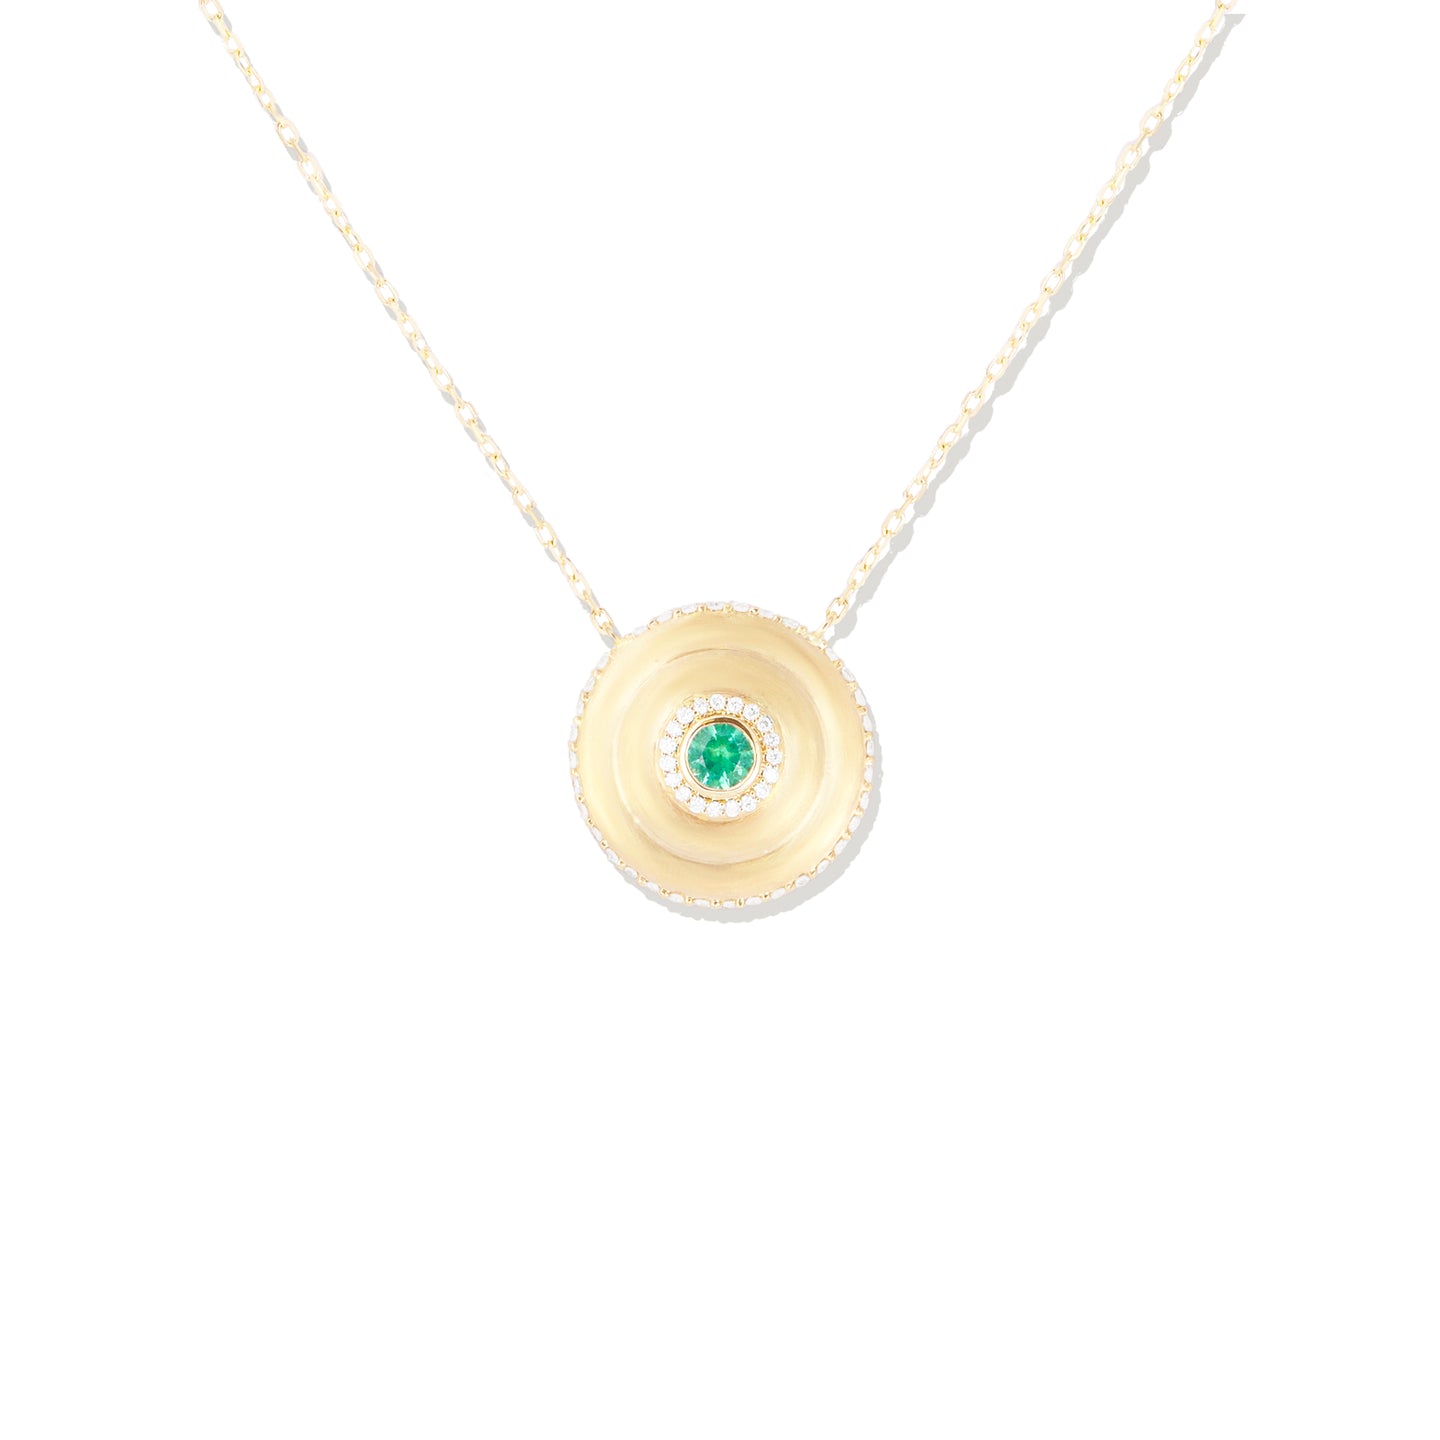 Evolve Large Disk Pendant Necklace - Emerald